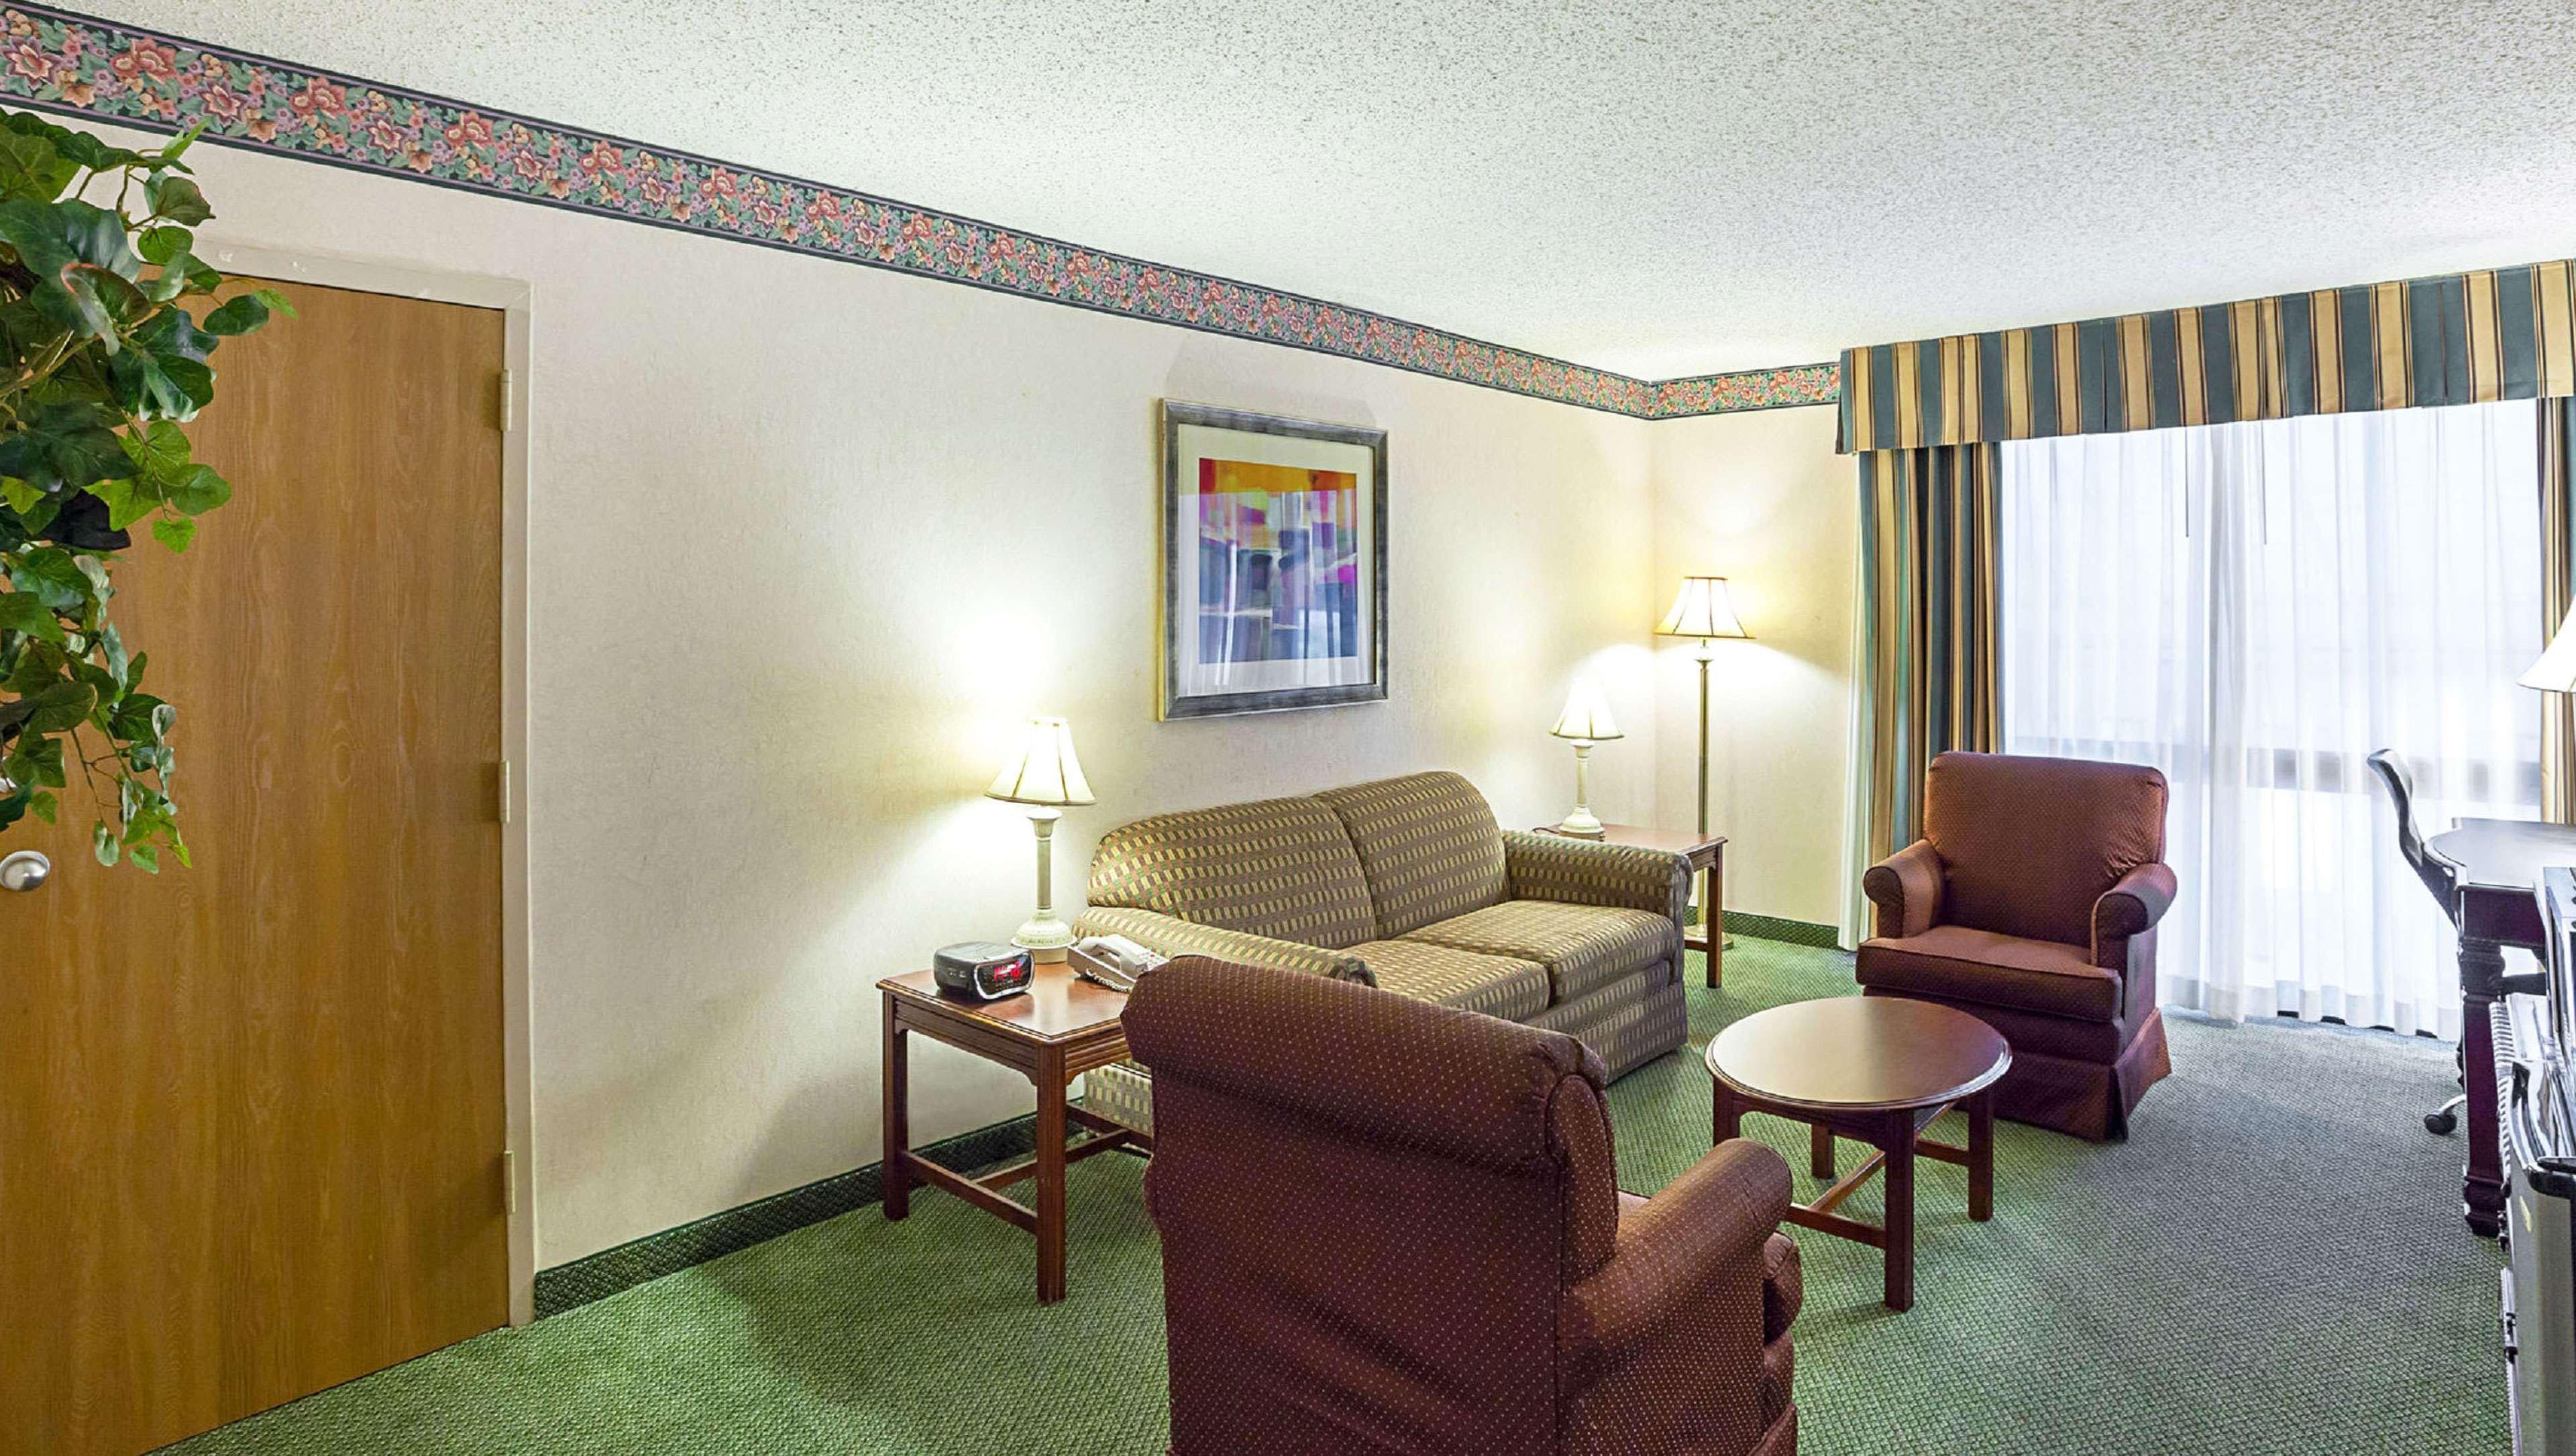 Hotel Magnuson Grand Desoto Zewnętrze zdjęcie